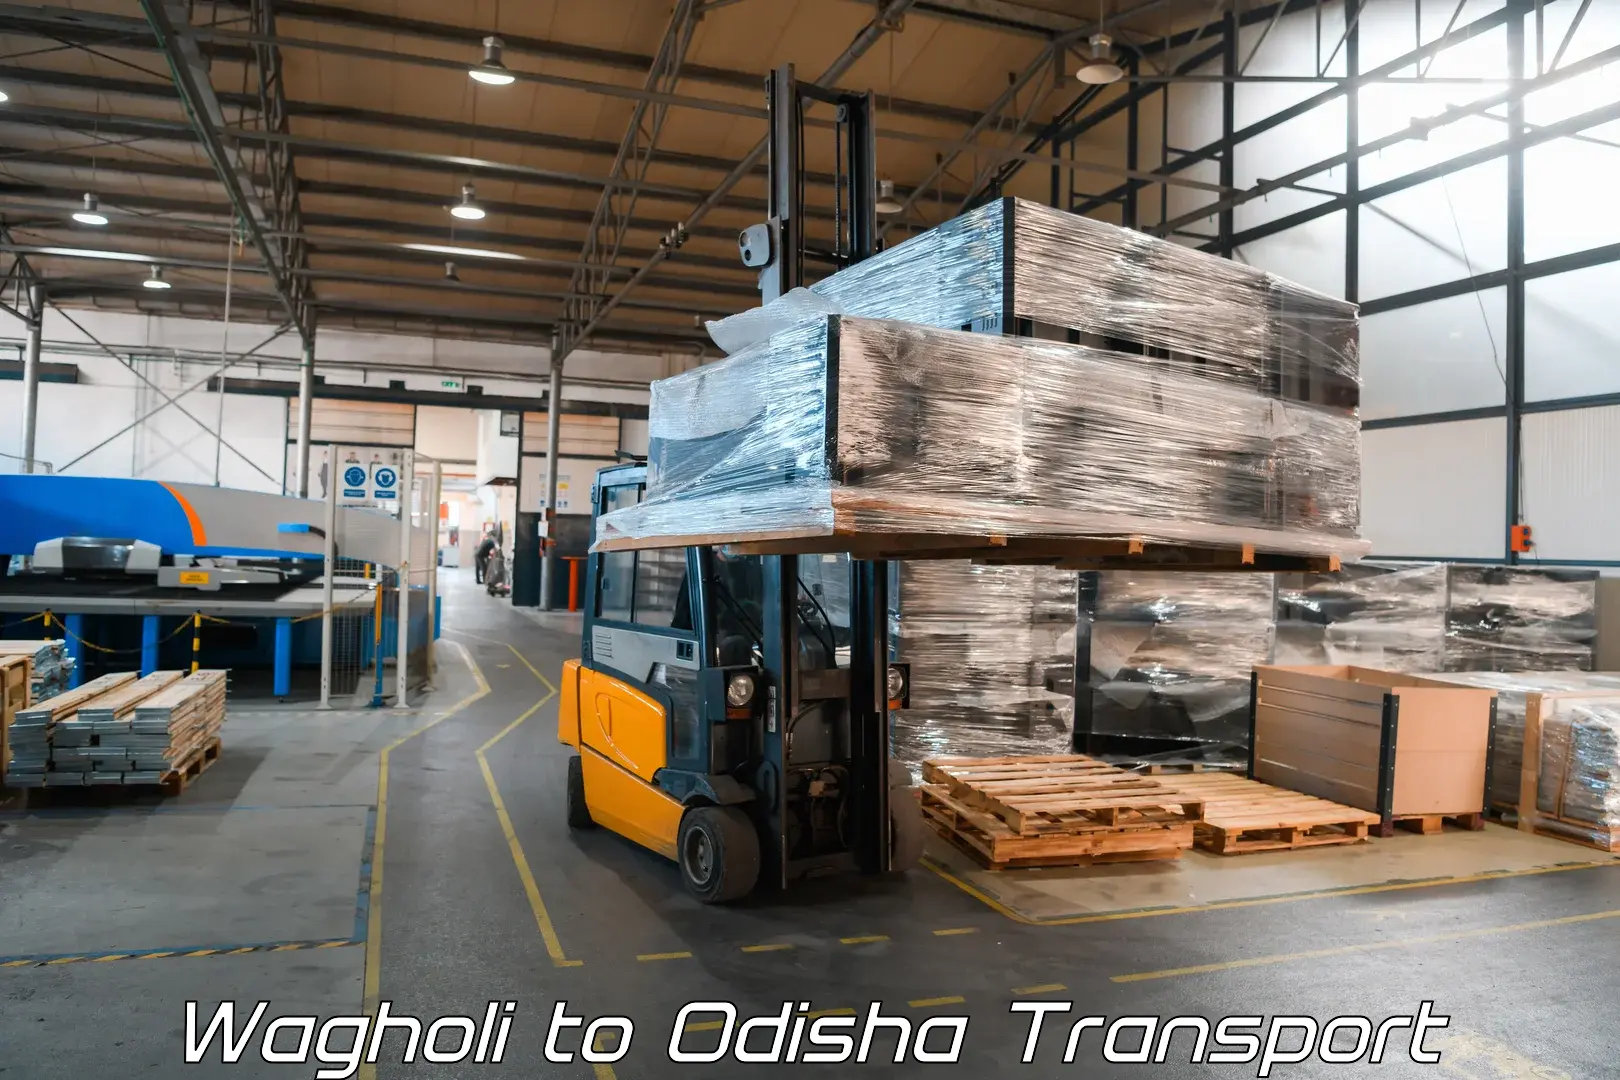 Daily transport service Wagholi to Kuchinda